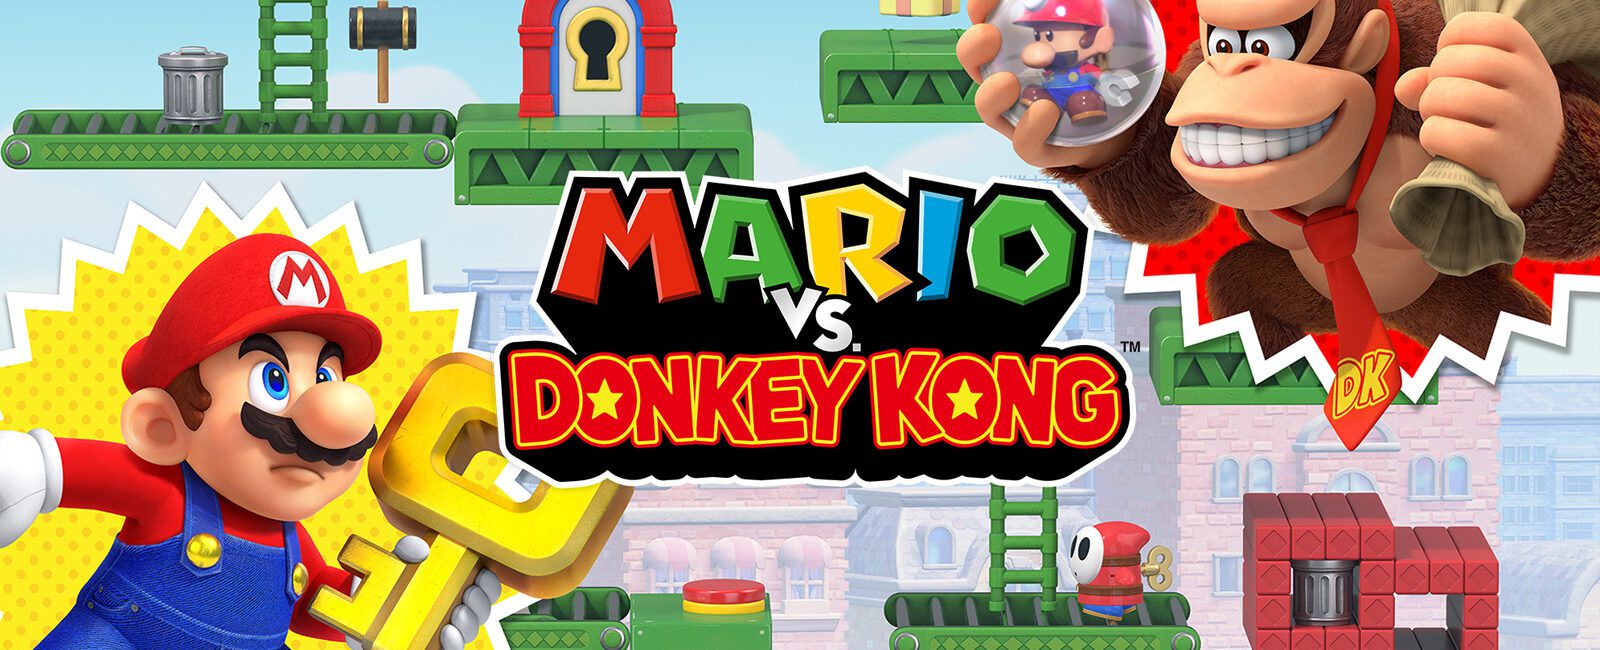 Hoofdafbeelding bij Mario vs. Donkey Kong-review op de Nintendo Switch